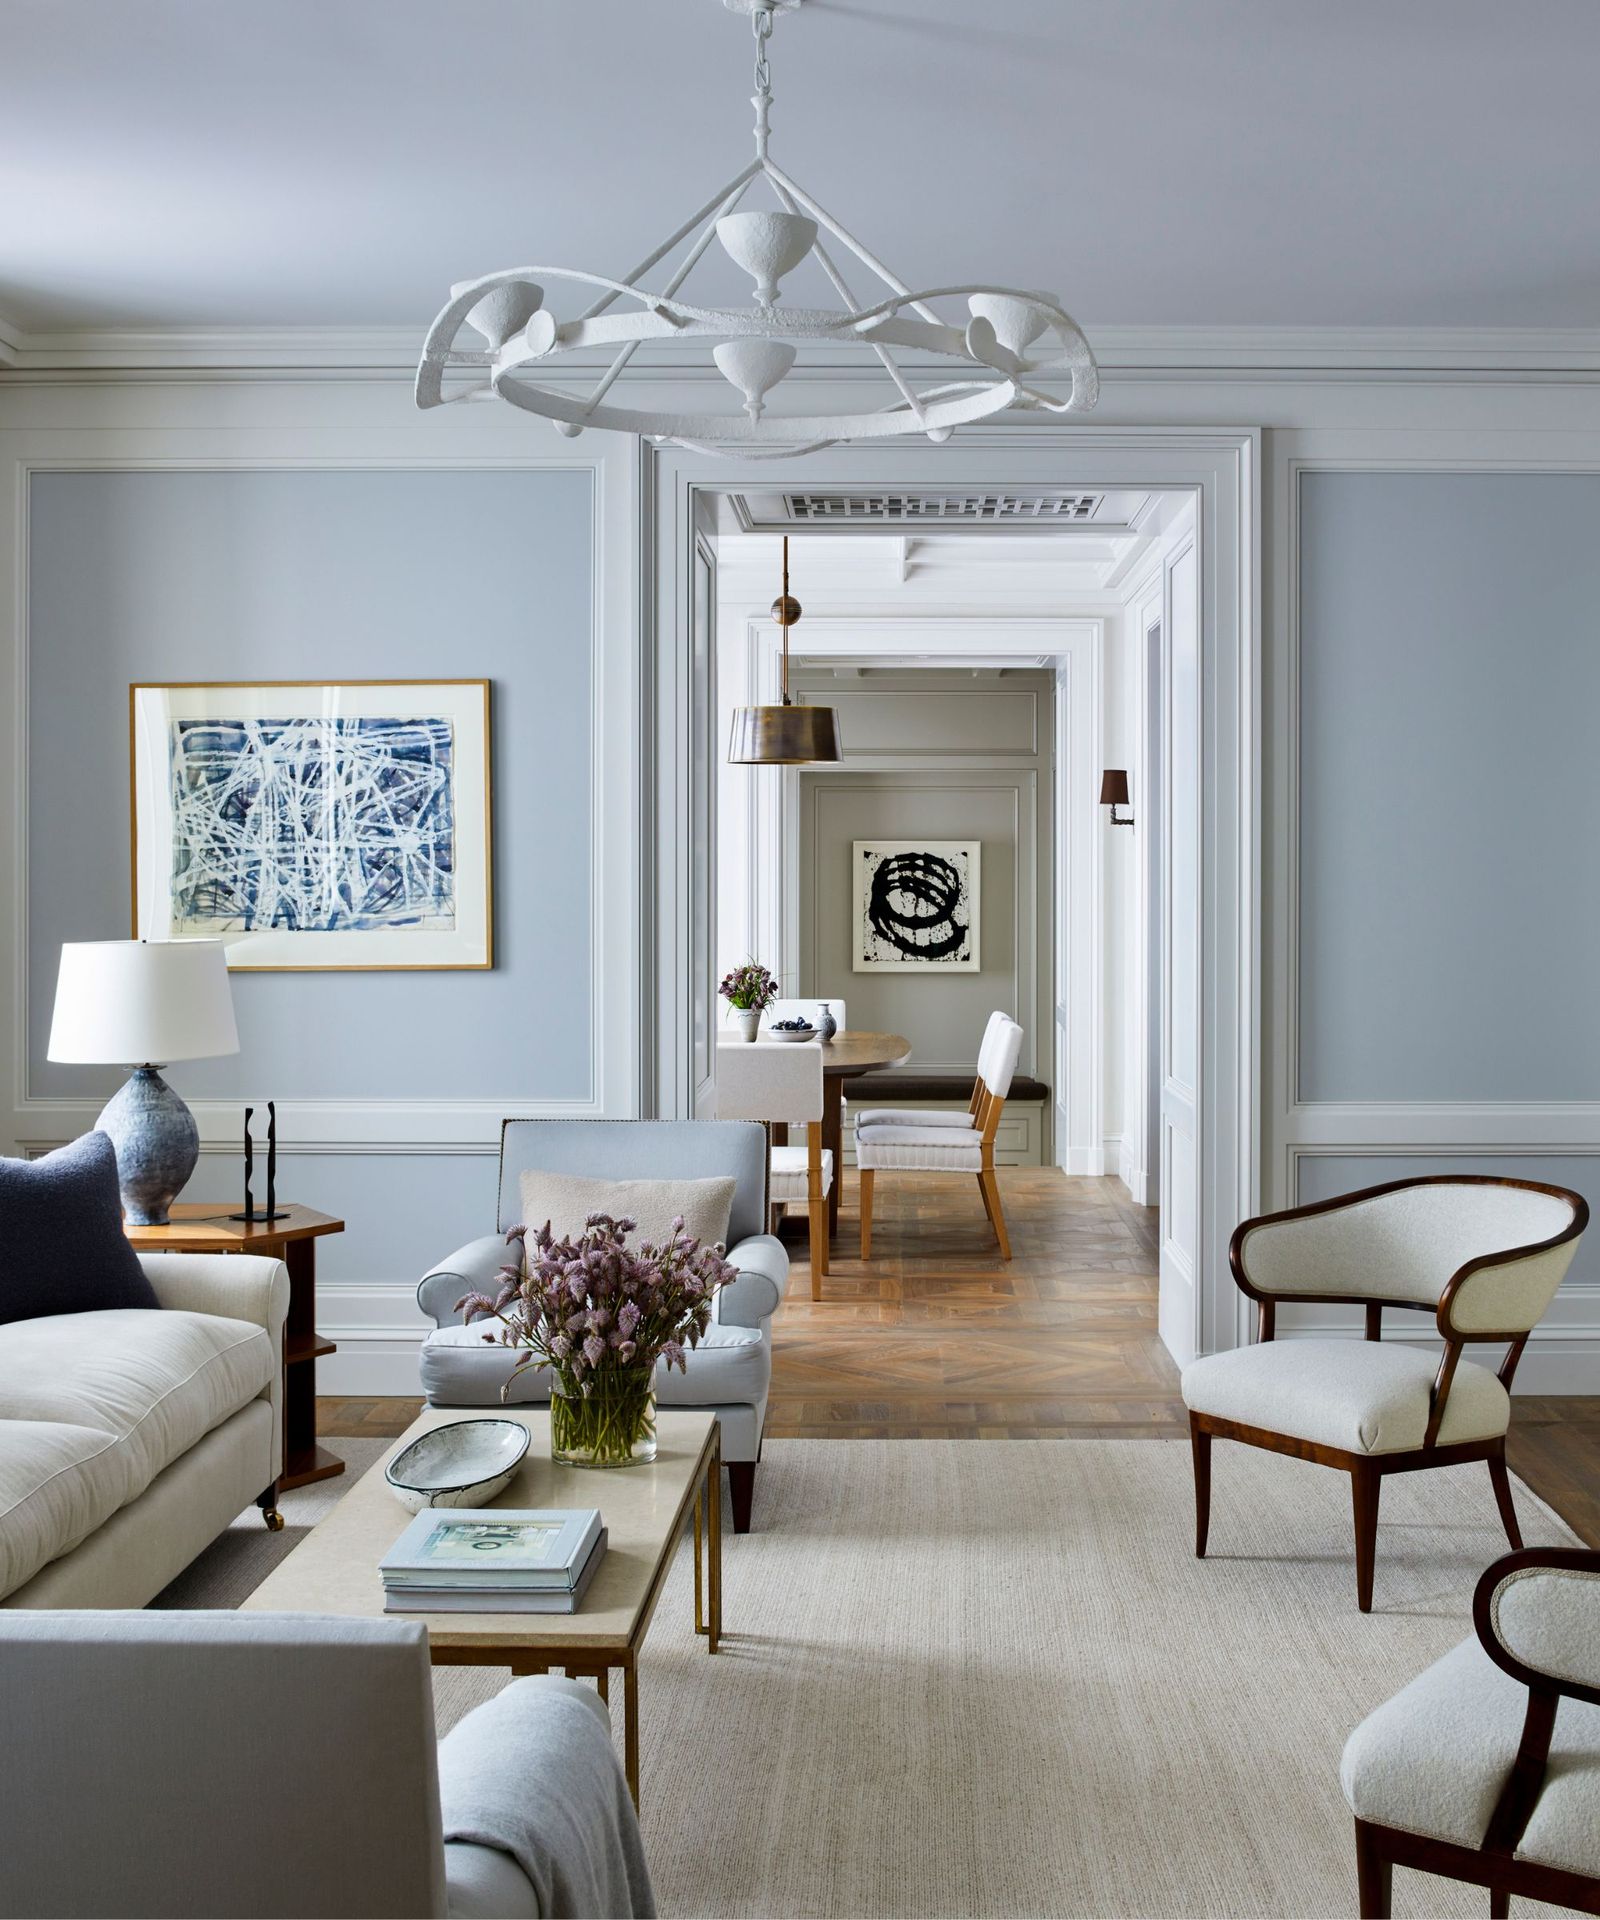 Interior designer Kylee Shintaffer's home is an elegant haven